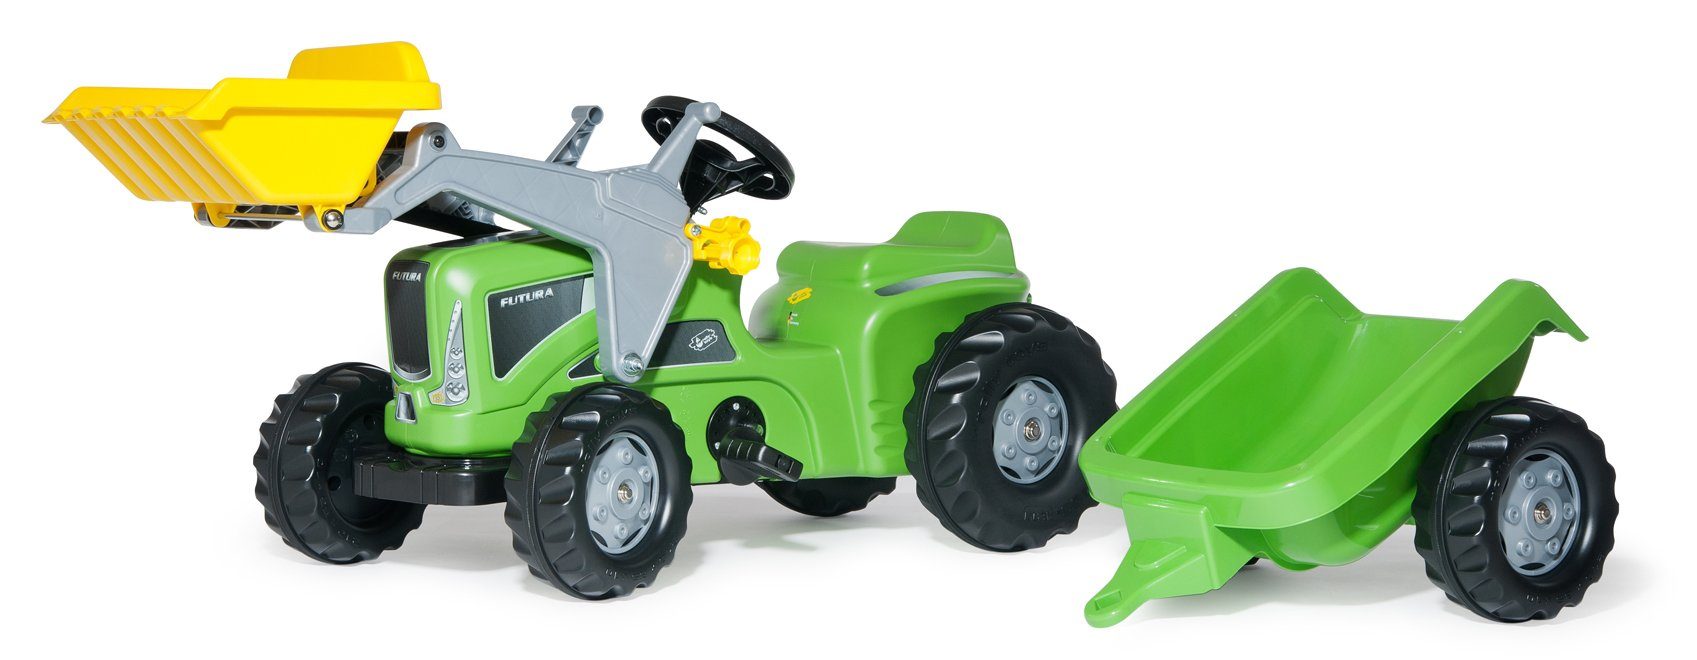 Toys Tretfahrzeug und Futura toys® Lader incl. Traktor Anhänger 630035 Rolly rolly